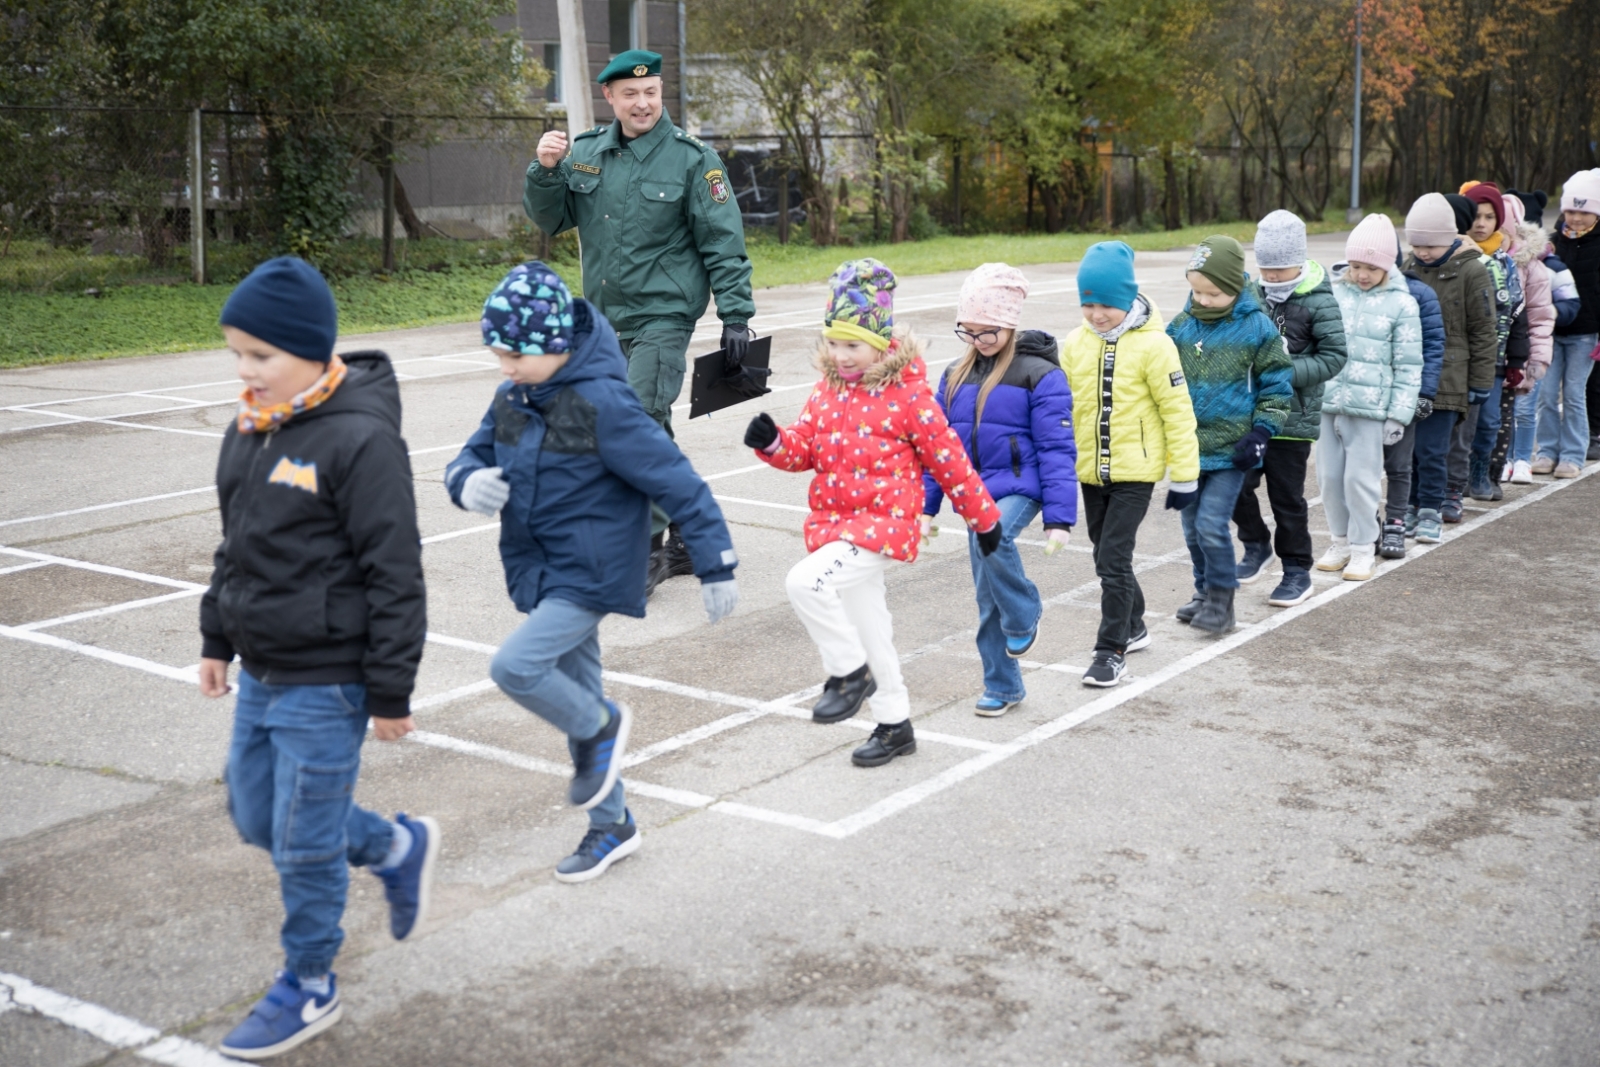 Skolēni no Latvijas skolām viesojas VRK Karjeras nedēļas ietvaros no 16. līdz 20. oktobrim